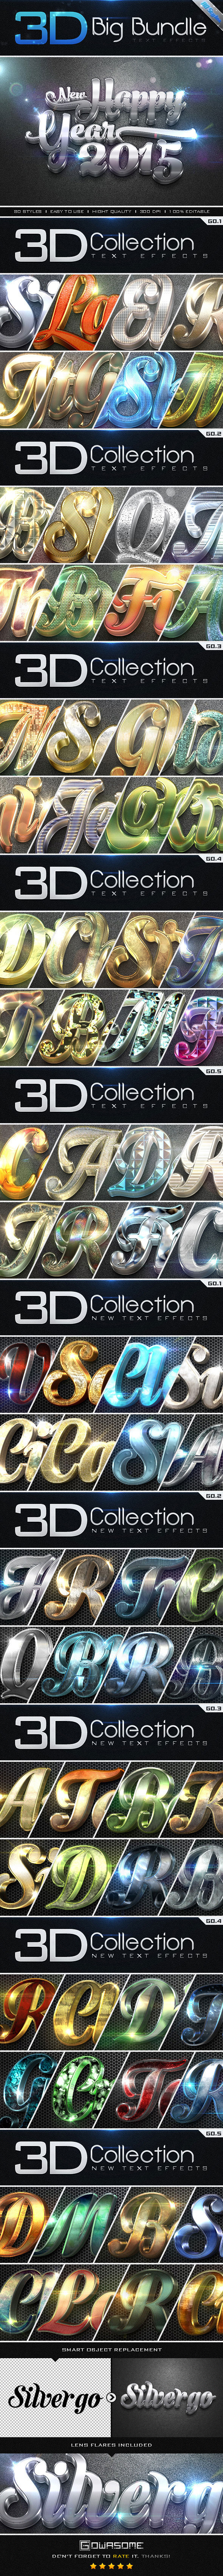 [巨献]完美酷炫的3D立体特效字体图层样式合集(1-5)[PSD,ASL]插图